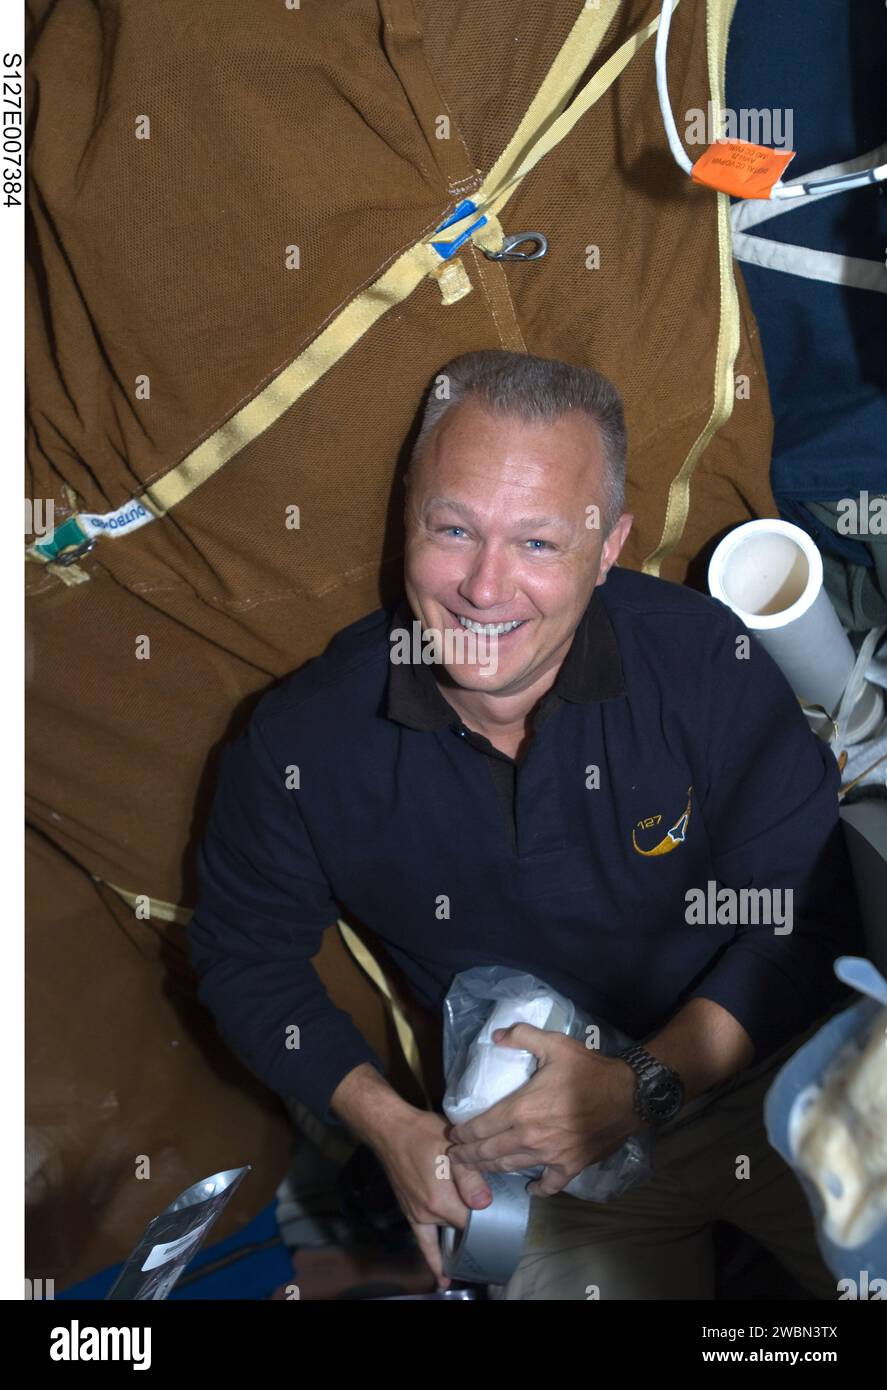 S127-E-007384 (21. Juli 2009) --- nach Ansicht des Astronauten Doug Hurley laufen die Dinge für die 13 Besatzungsmitglieder der gemeinsamen Station-Shuttle-Aggregation relativ gut. Hurley, Pilot der STS-127, ist auf dem mittleren Deck von Endeavour abgebildet, während die meisten Besatzungsmitglieder auf dem Außenposten der Umlaufbahn beschäftigt sind. Die Crew-Mitglieder arbeiteten an diesem Tag an vielen Roboterproblemen und arbeiteten von innen aus, um Hardware von außen zu transportieren. Stockfoto